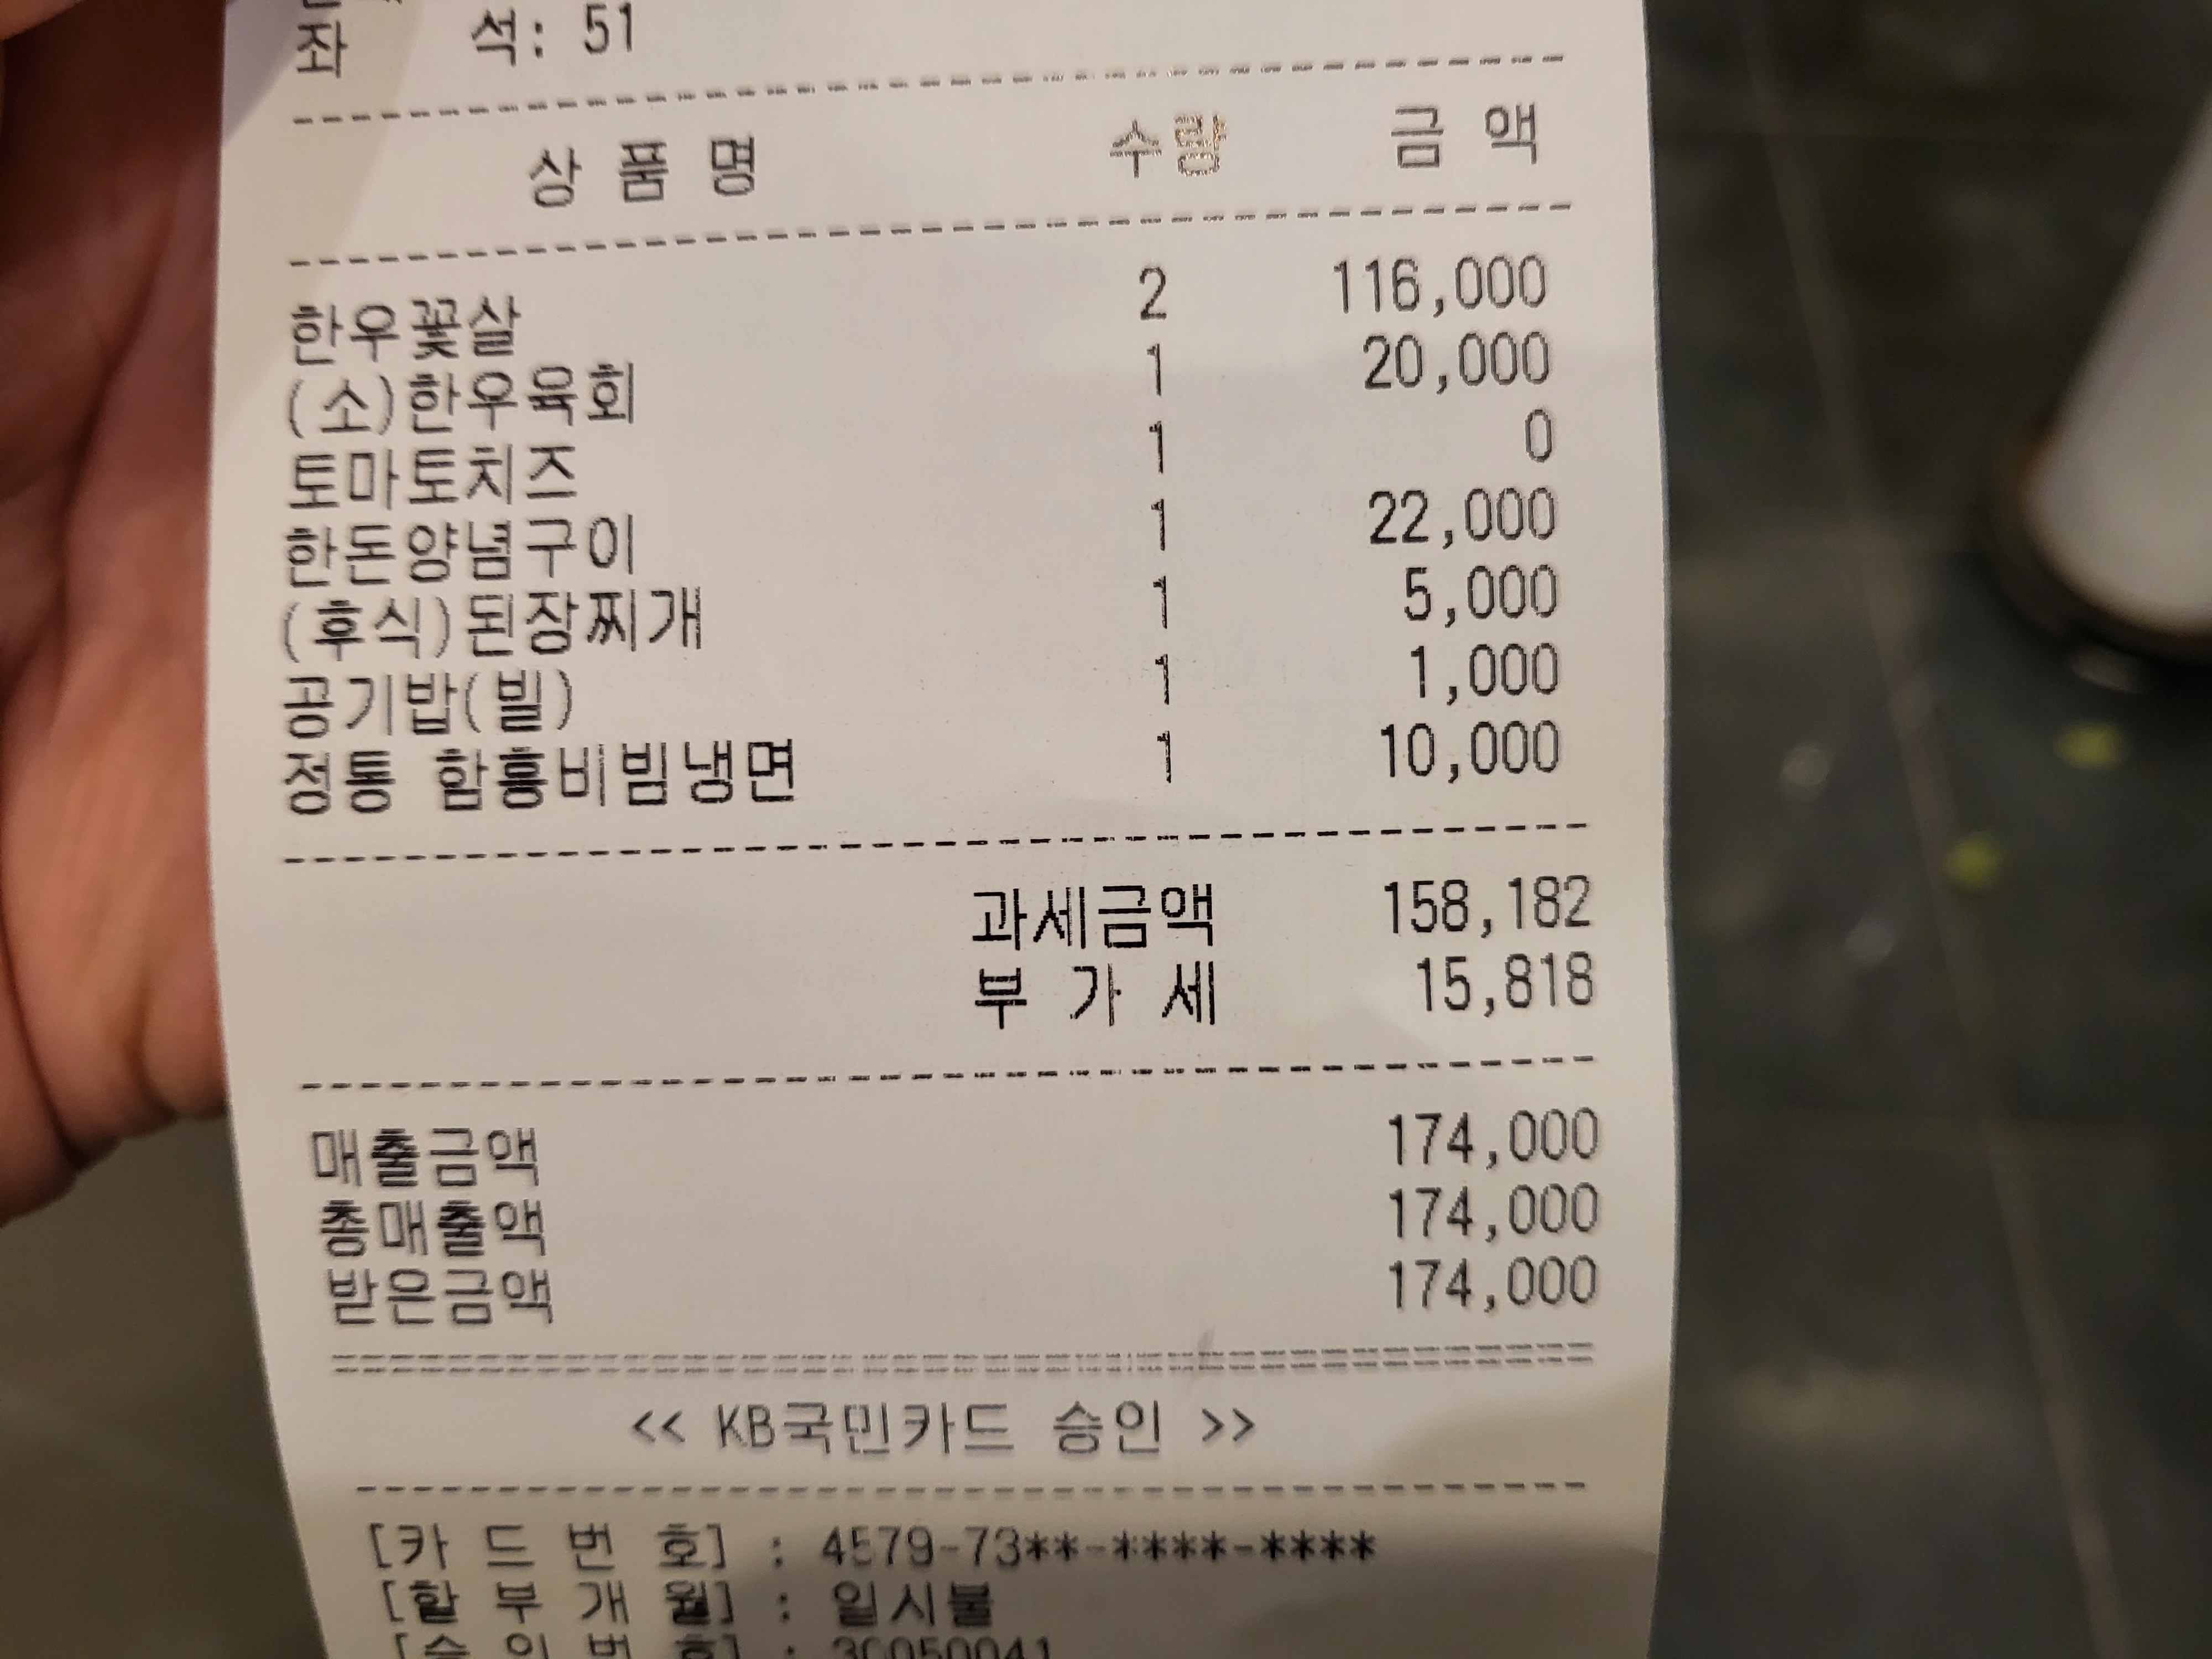 영수증인데 둘이 먹었는데 174,000원이 나왔다. 확실히 가격은 지나치게 비싸지만 프리미엄 식당이니 가격은 크게 고려안하기로 했다.